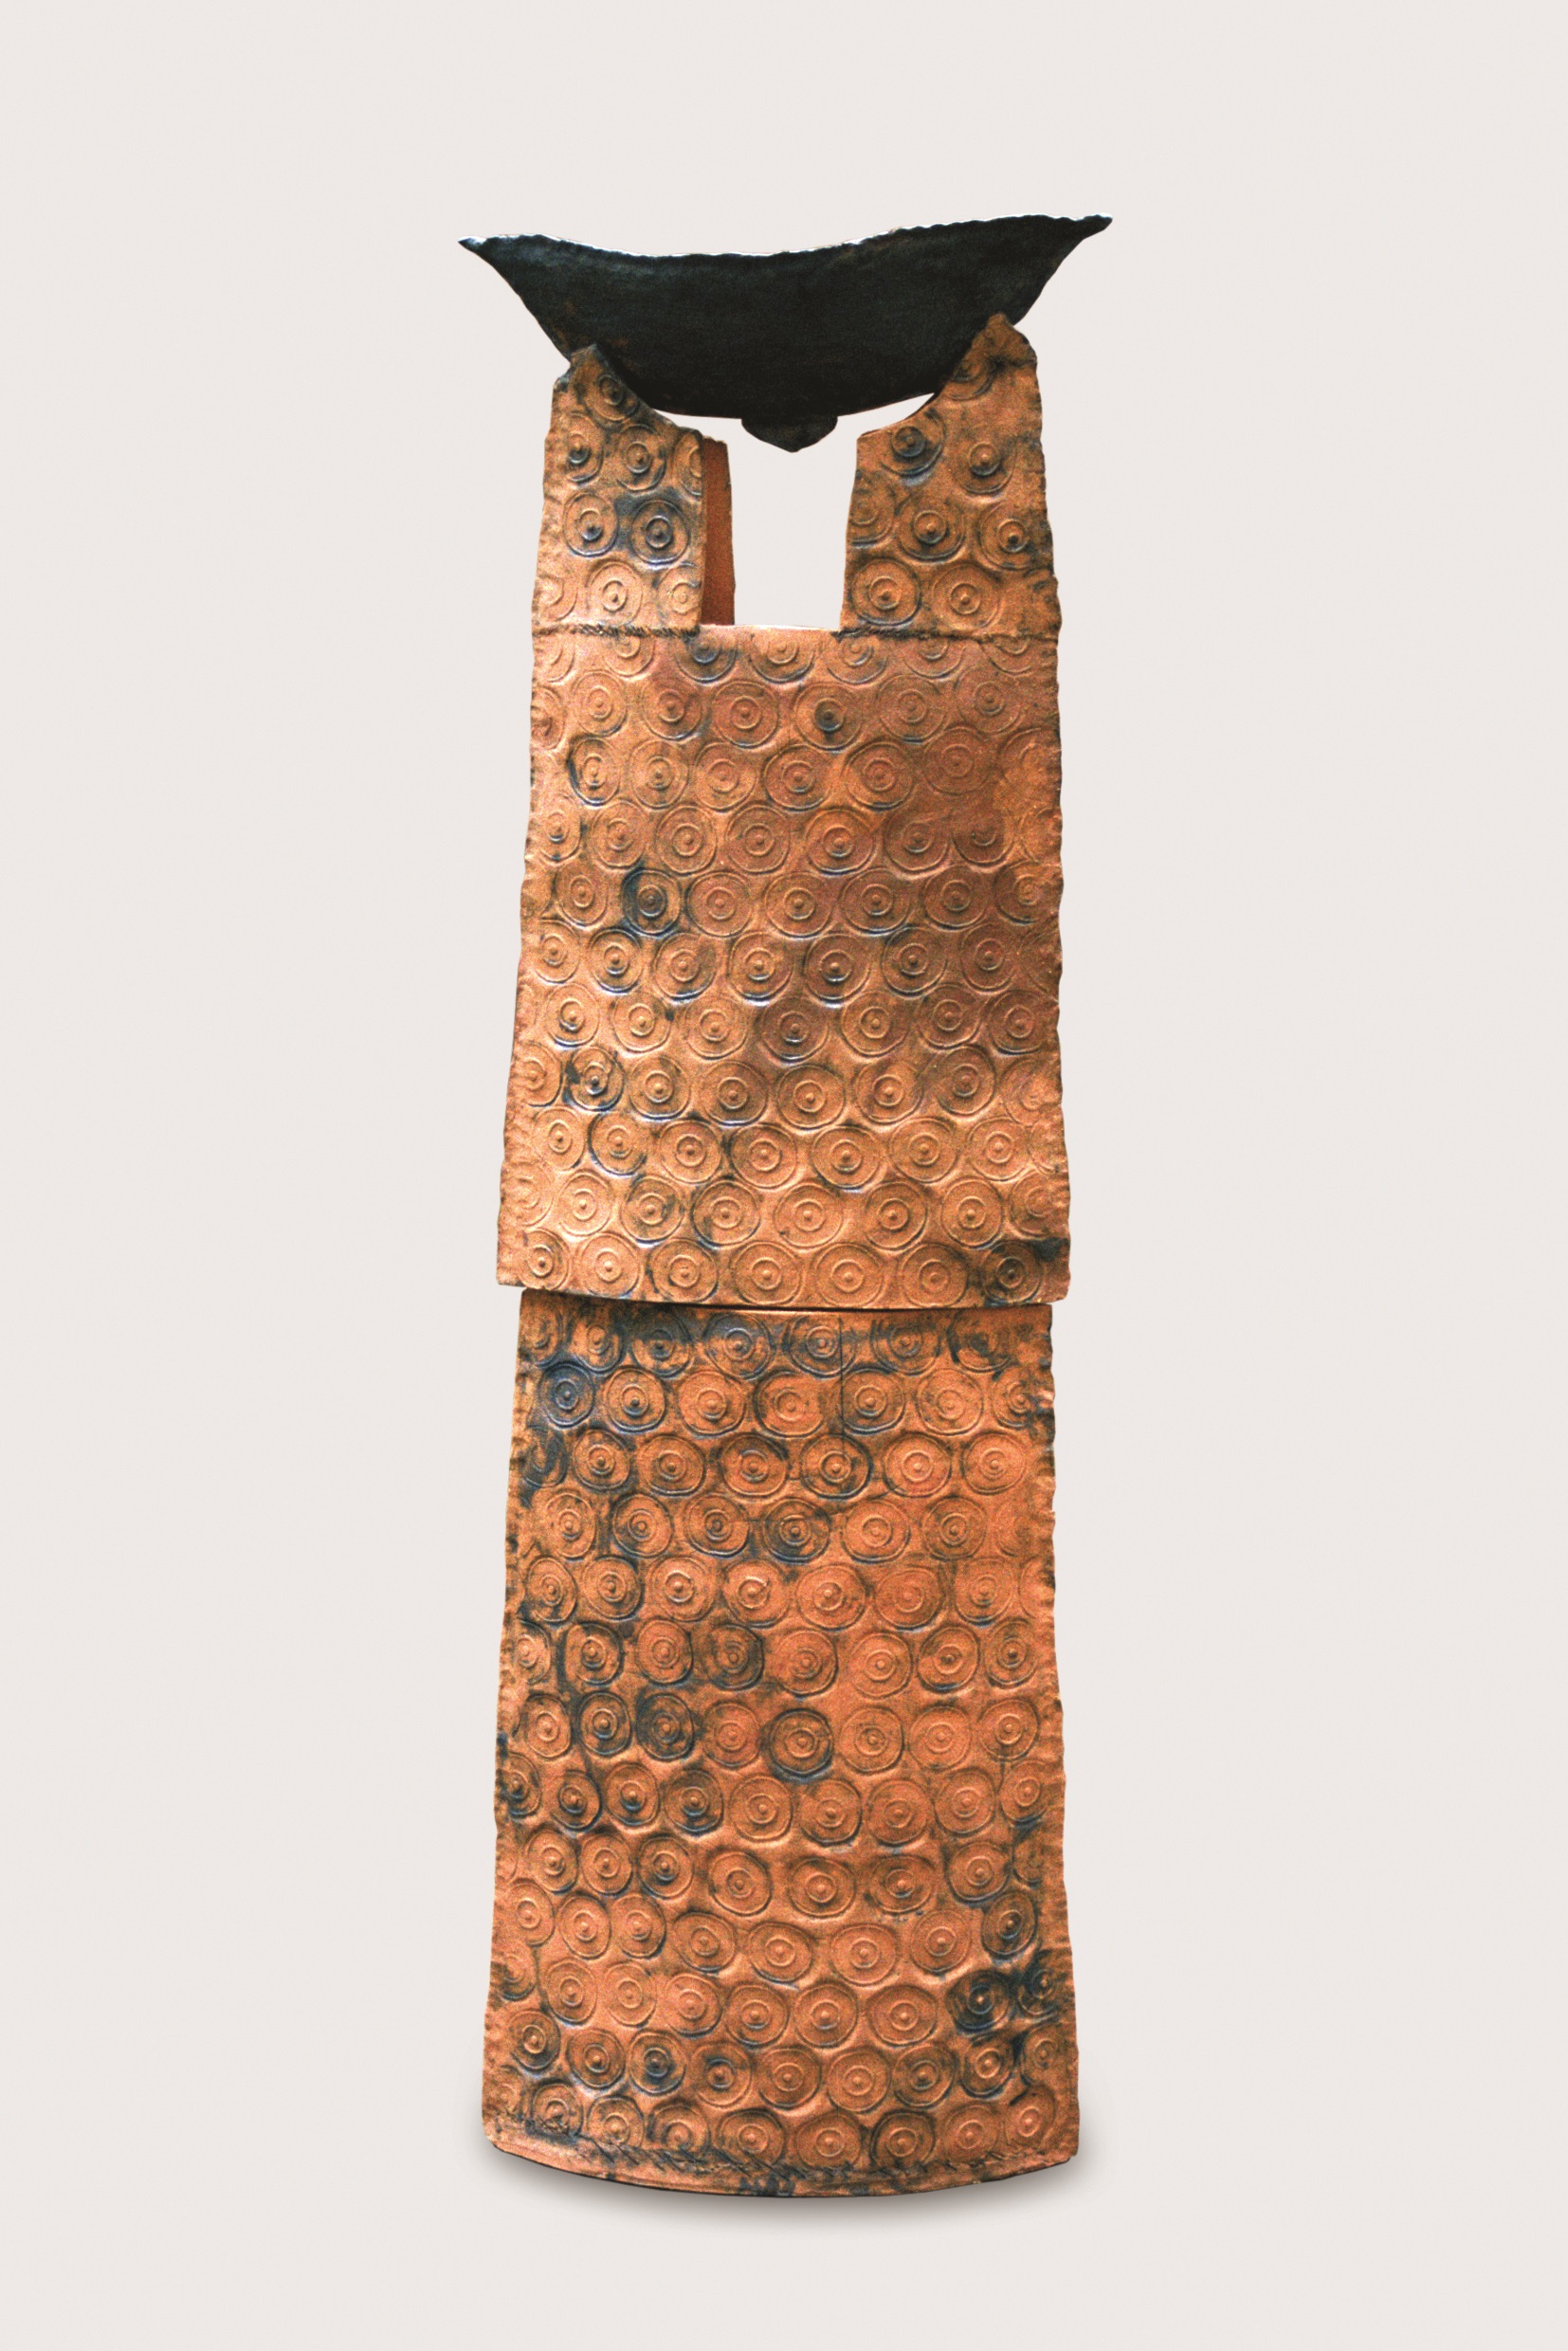 Loď Naděje, 2001, šamot s červenicí, kysličníky kovů(je ve sbírce Západočeského muzea v Plzni)